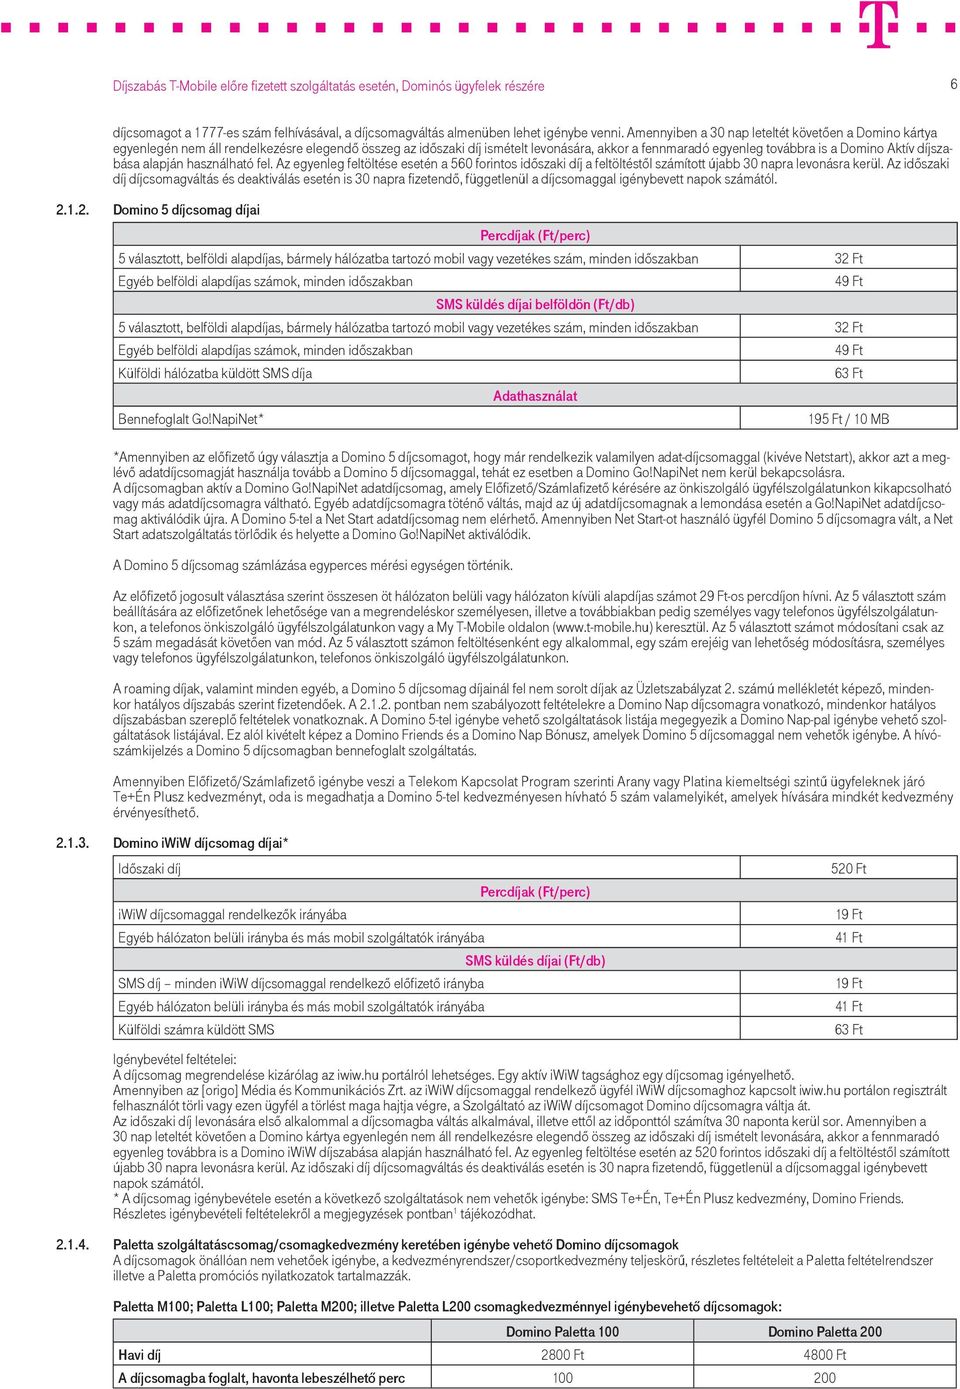 Díjszabás T-Mobile előre fizetett szolgáltatás esetén, Dominós ügyfelek  részére - PDF Ingyenes letöltés